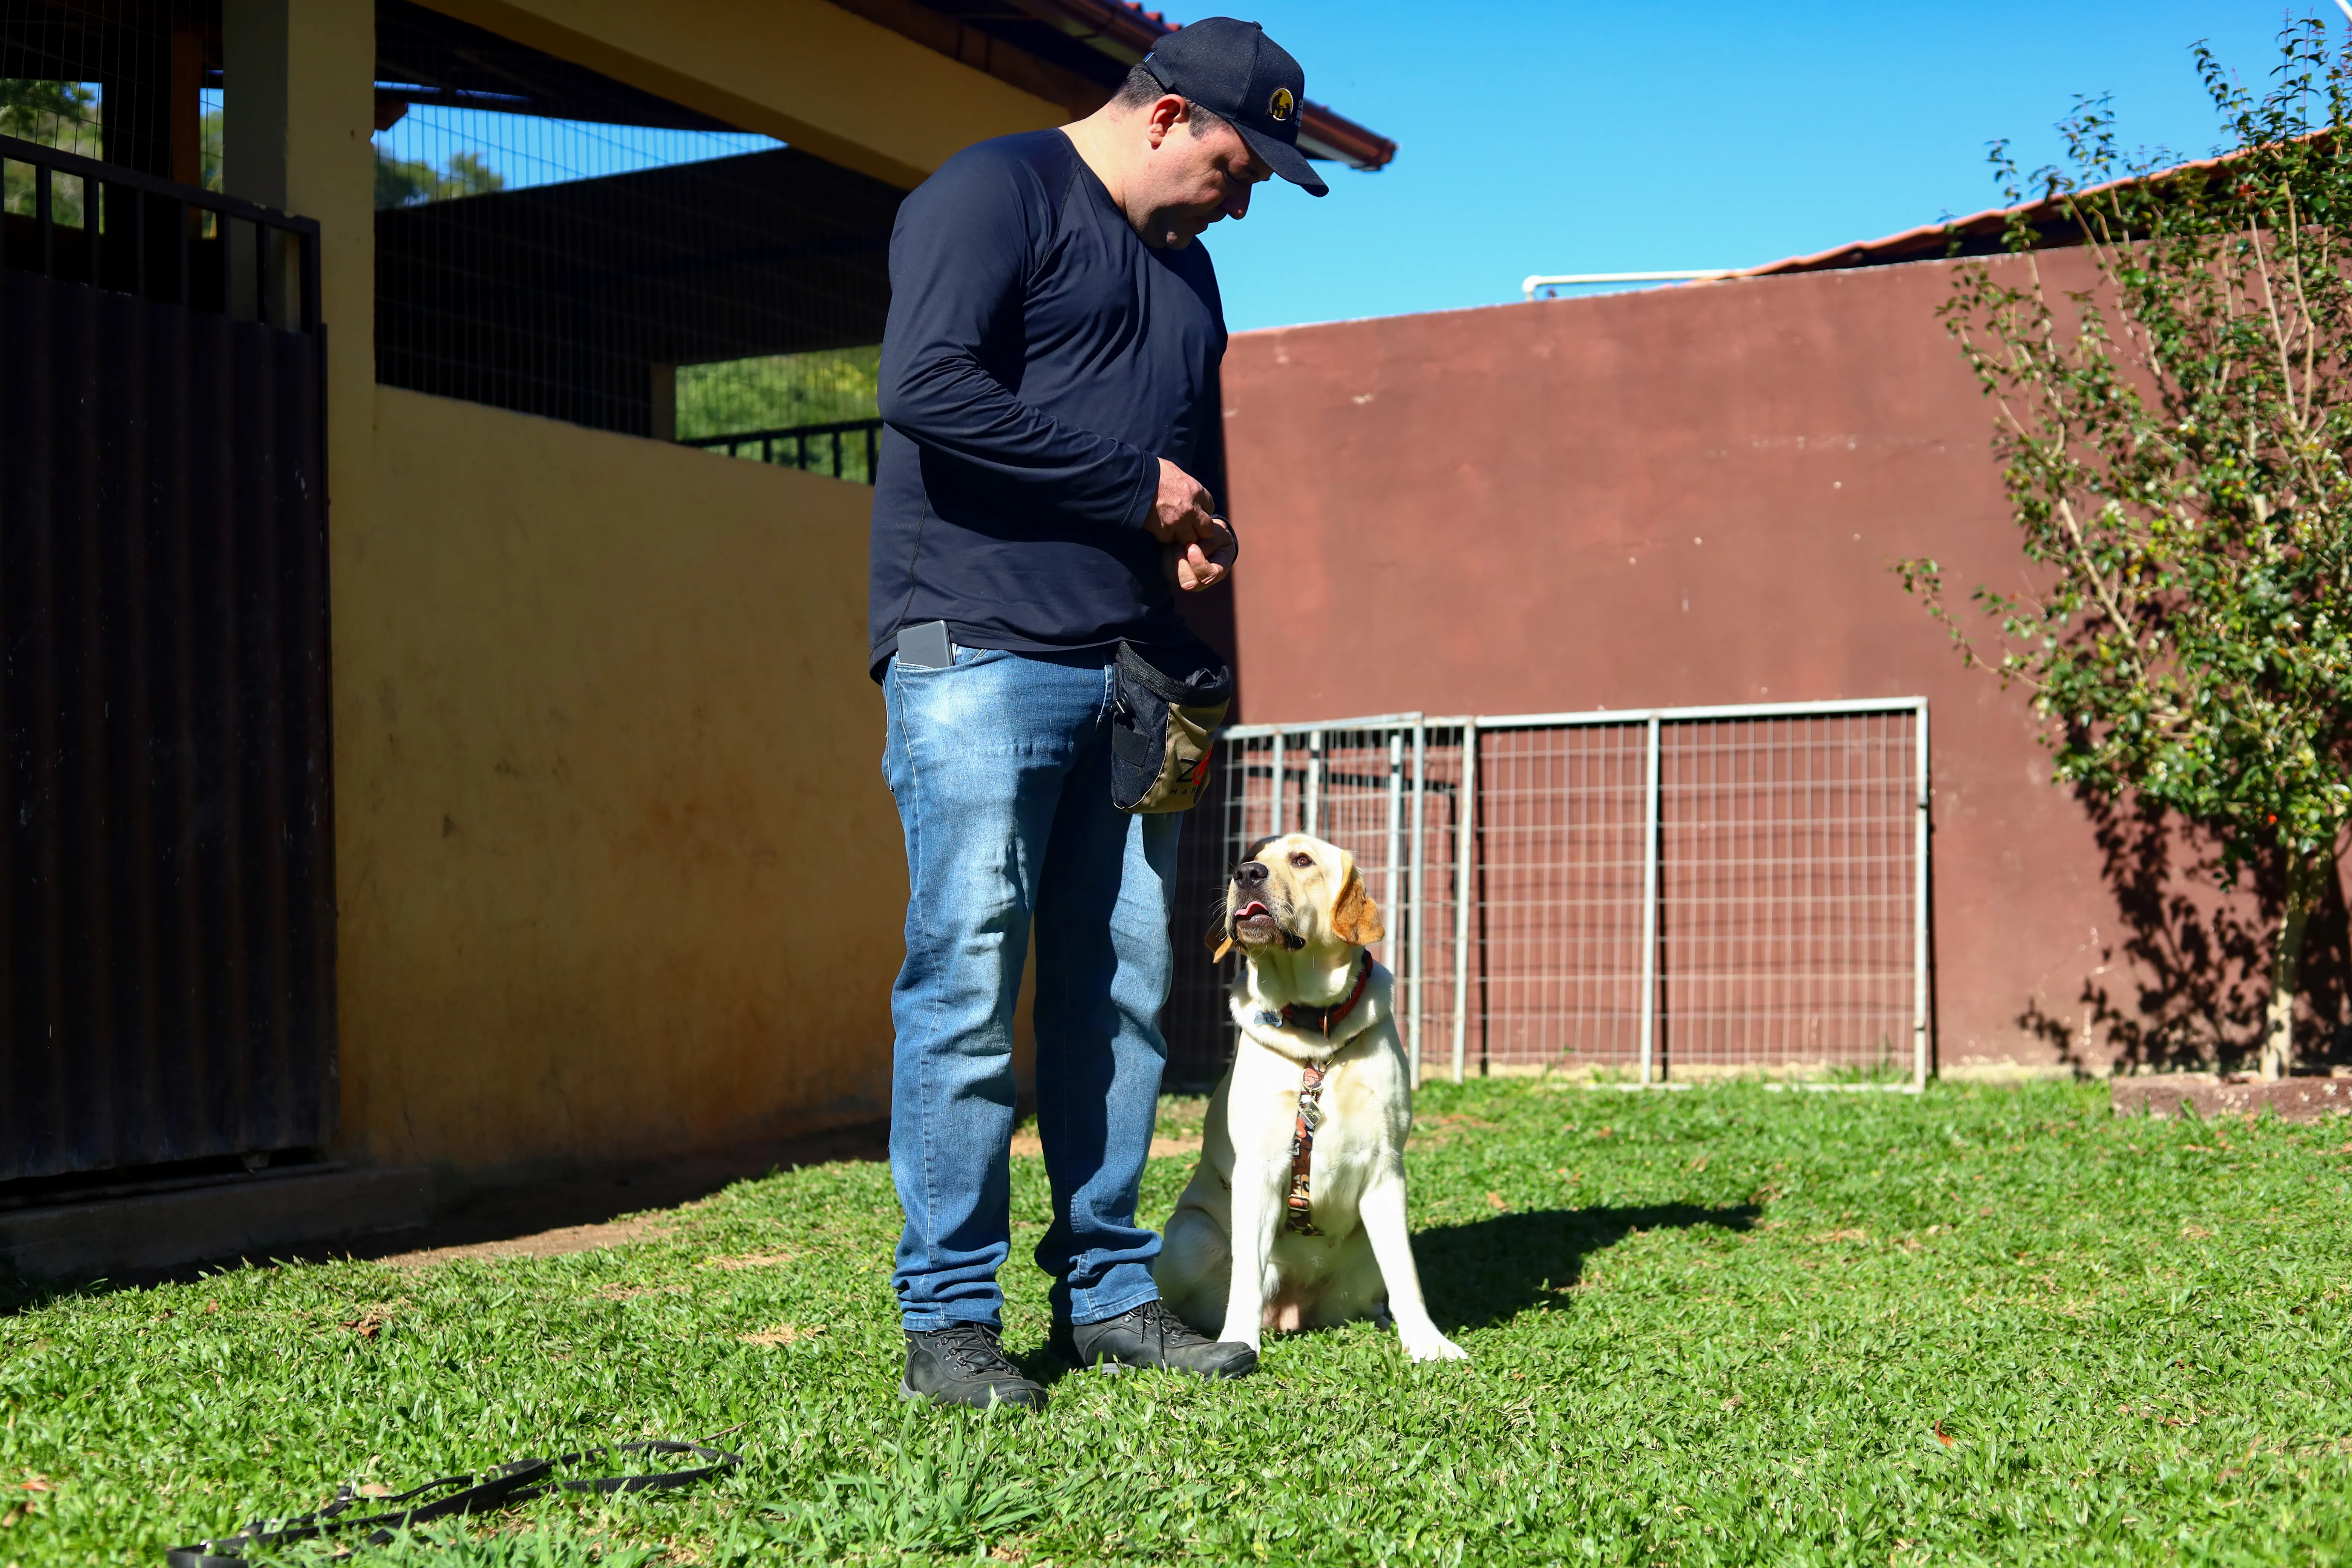 O adestrador de cães Carlos Sardinha atua no ramo desde 2016